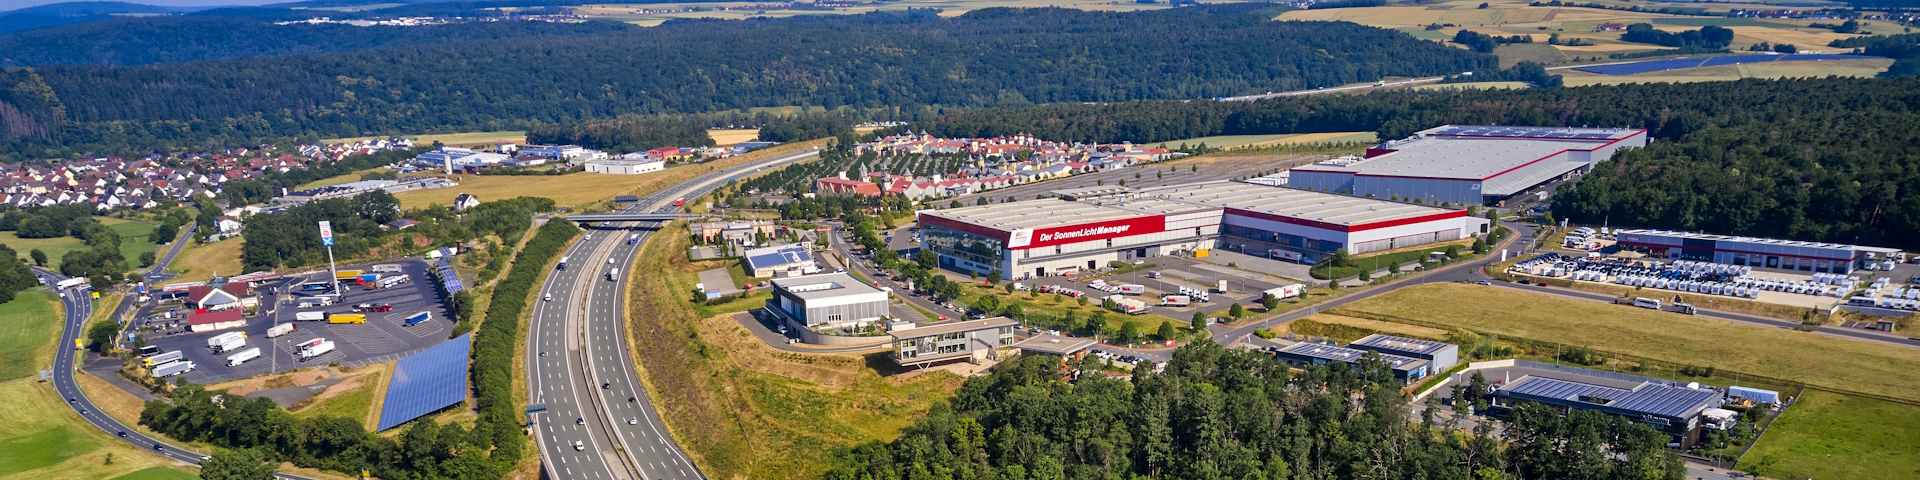 Luftbild des Gewerbegebietes Almosenberg